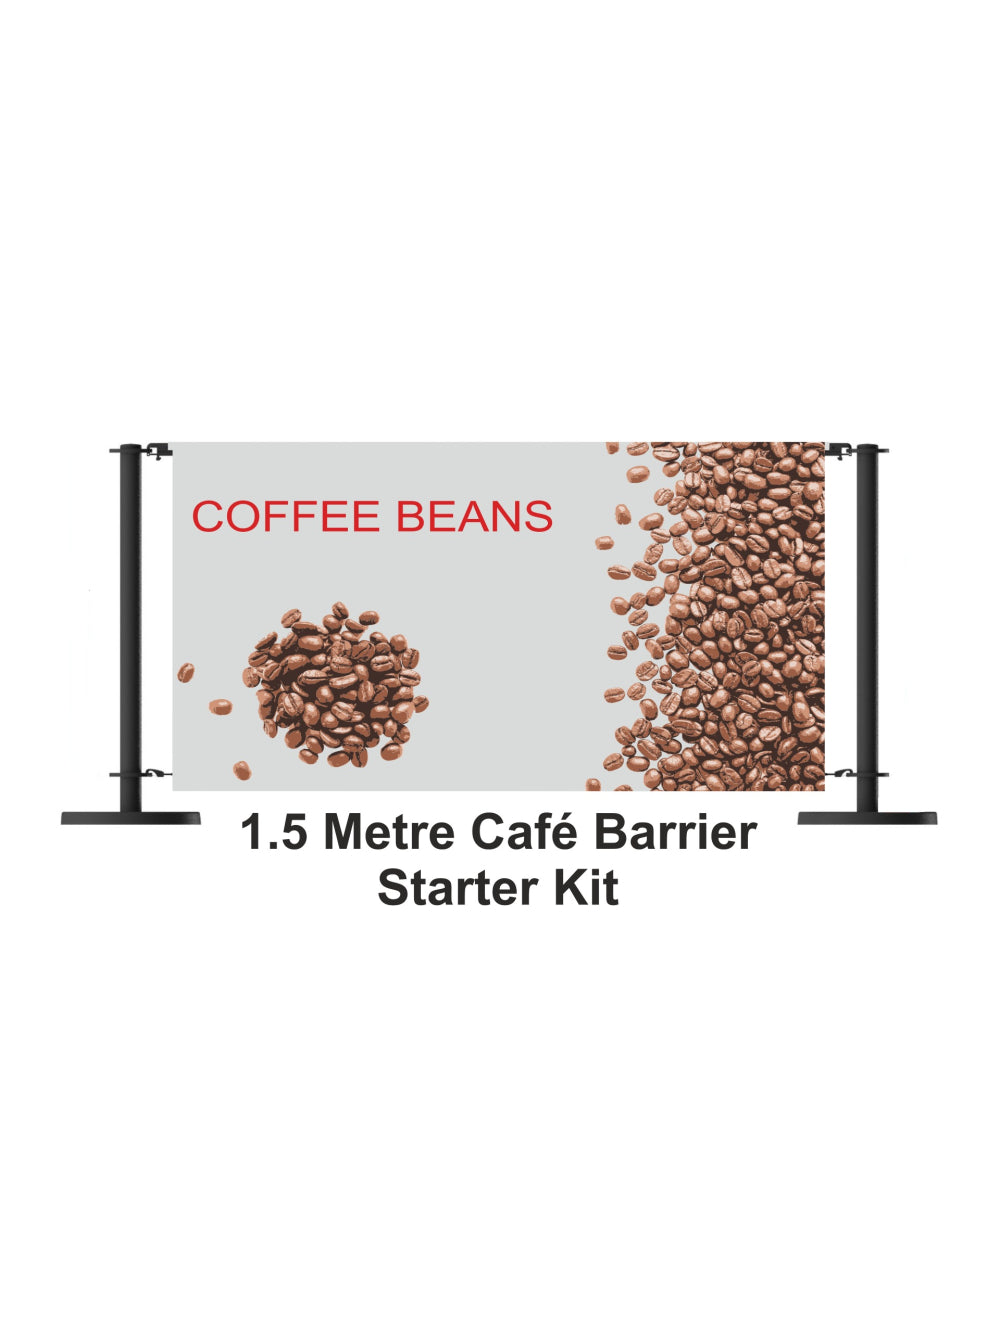 Početni komplet barijera za kafiće od 1,5 metara